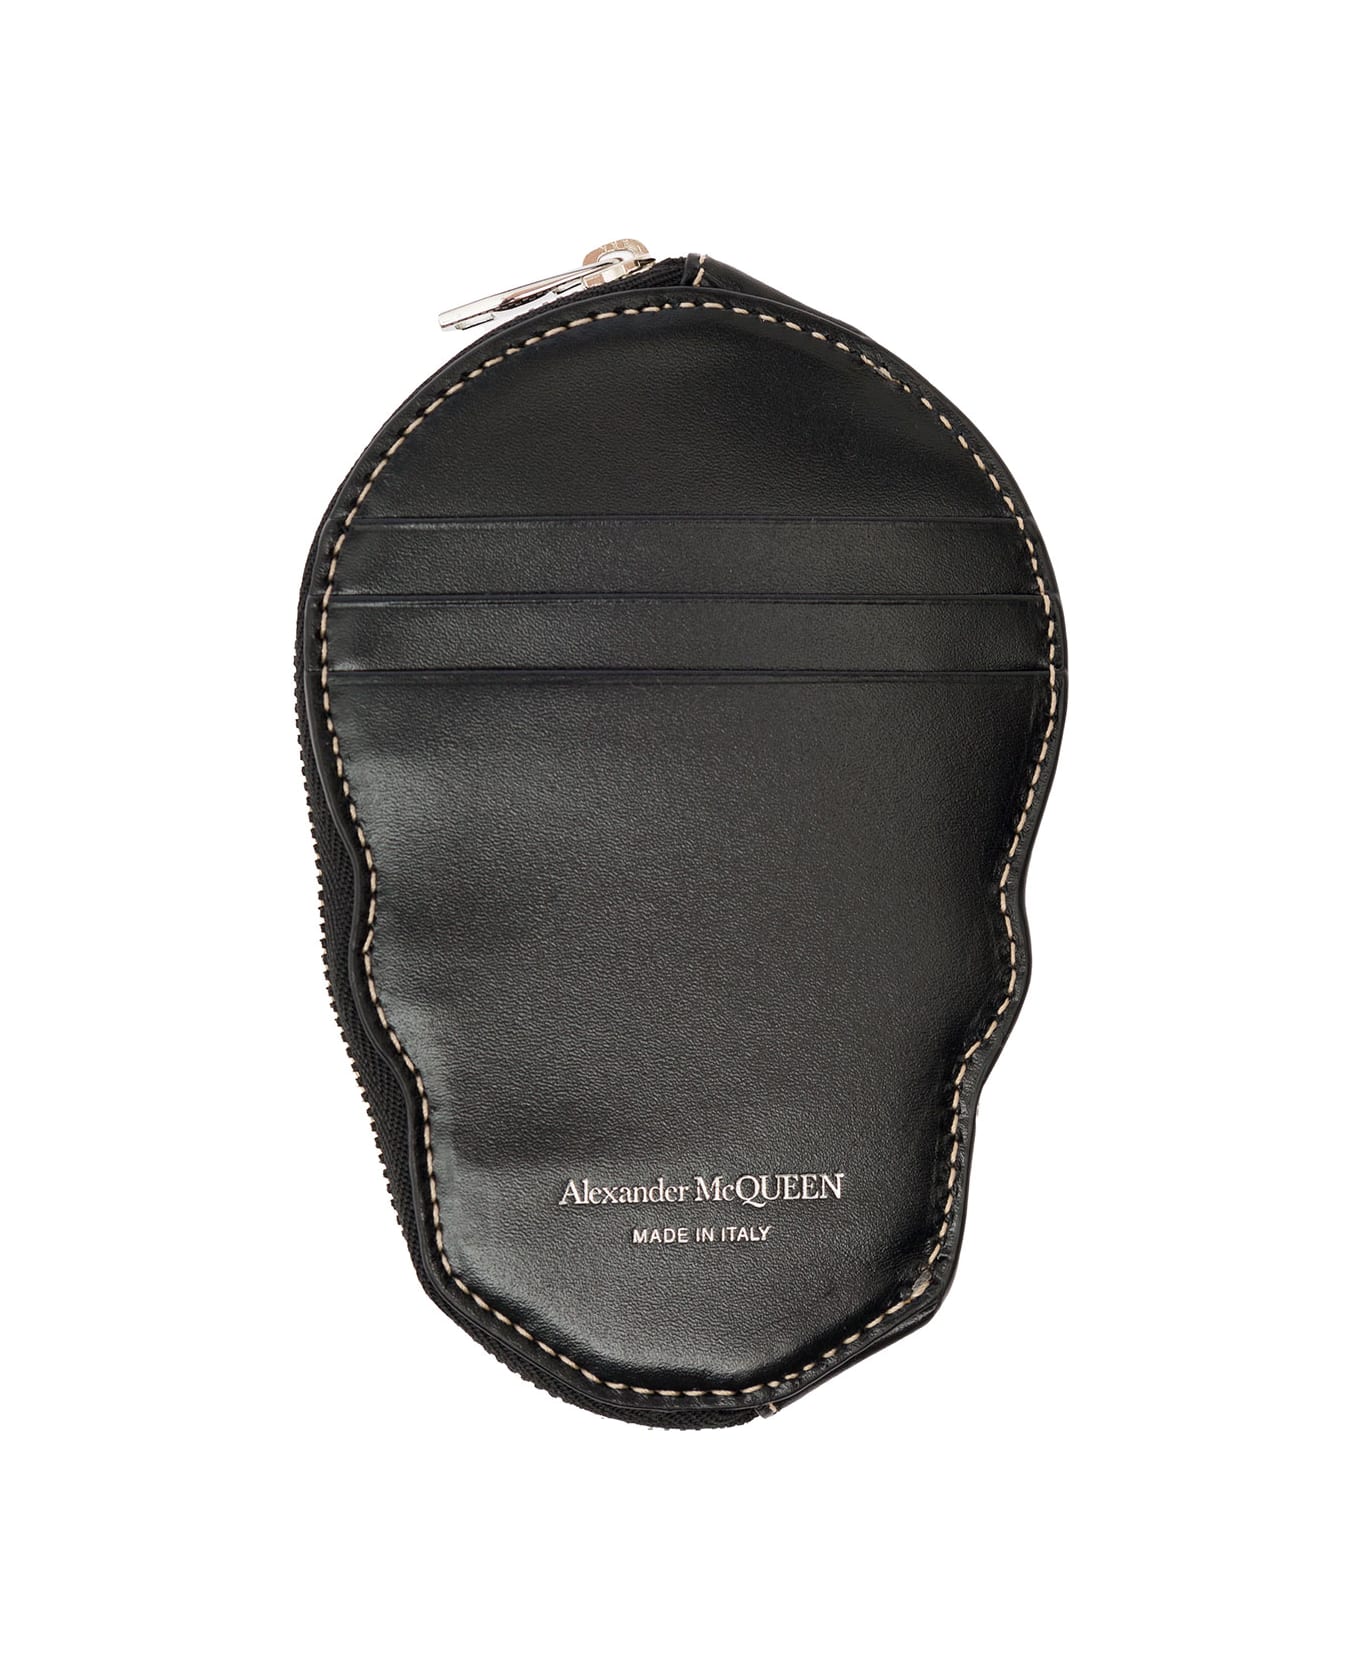 Alexander McQueen Black Skull-shaped Card-holder With Zip In Leather Man Alexander Mcqueen - Black 財布